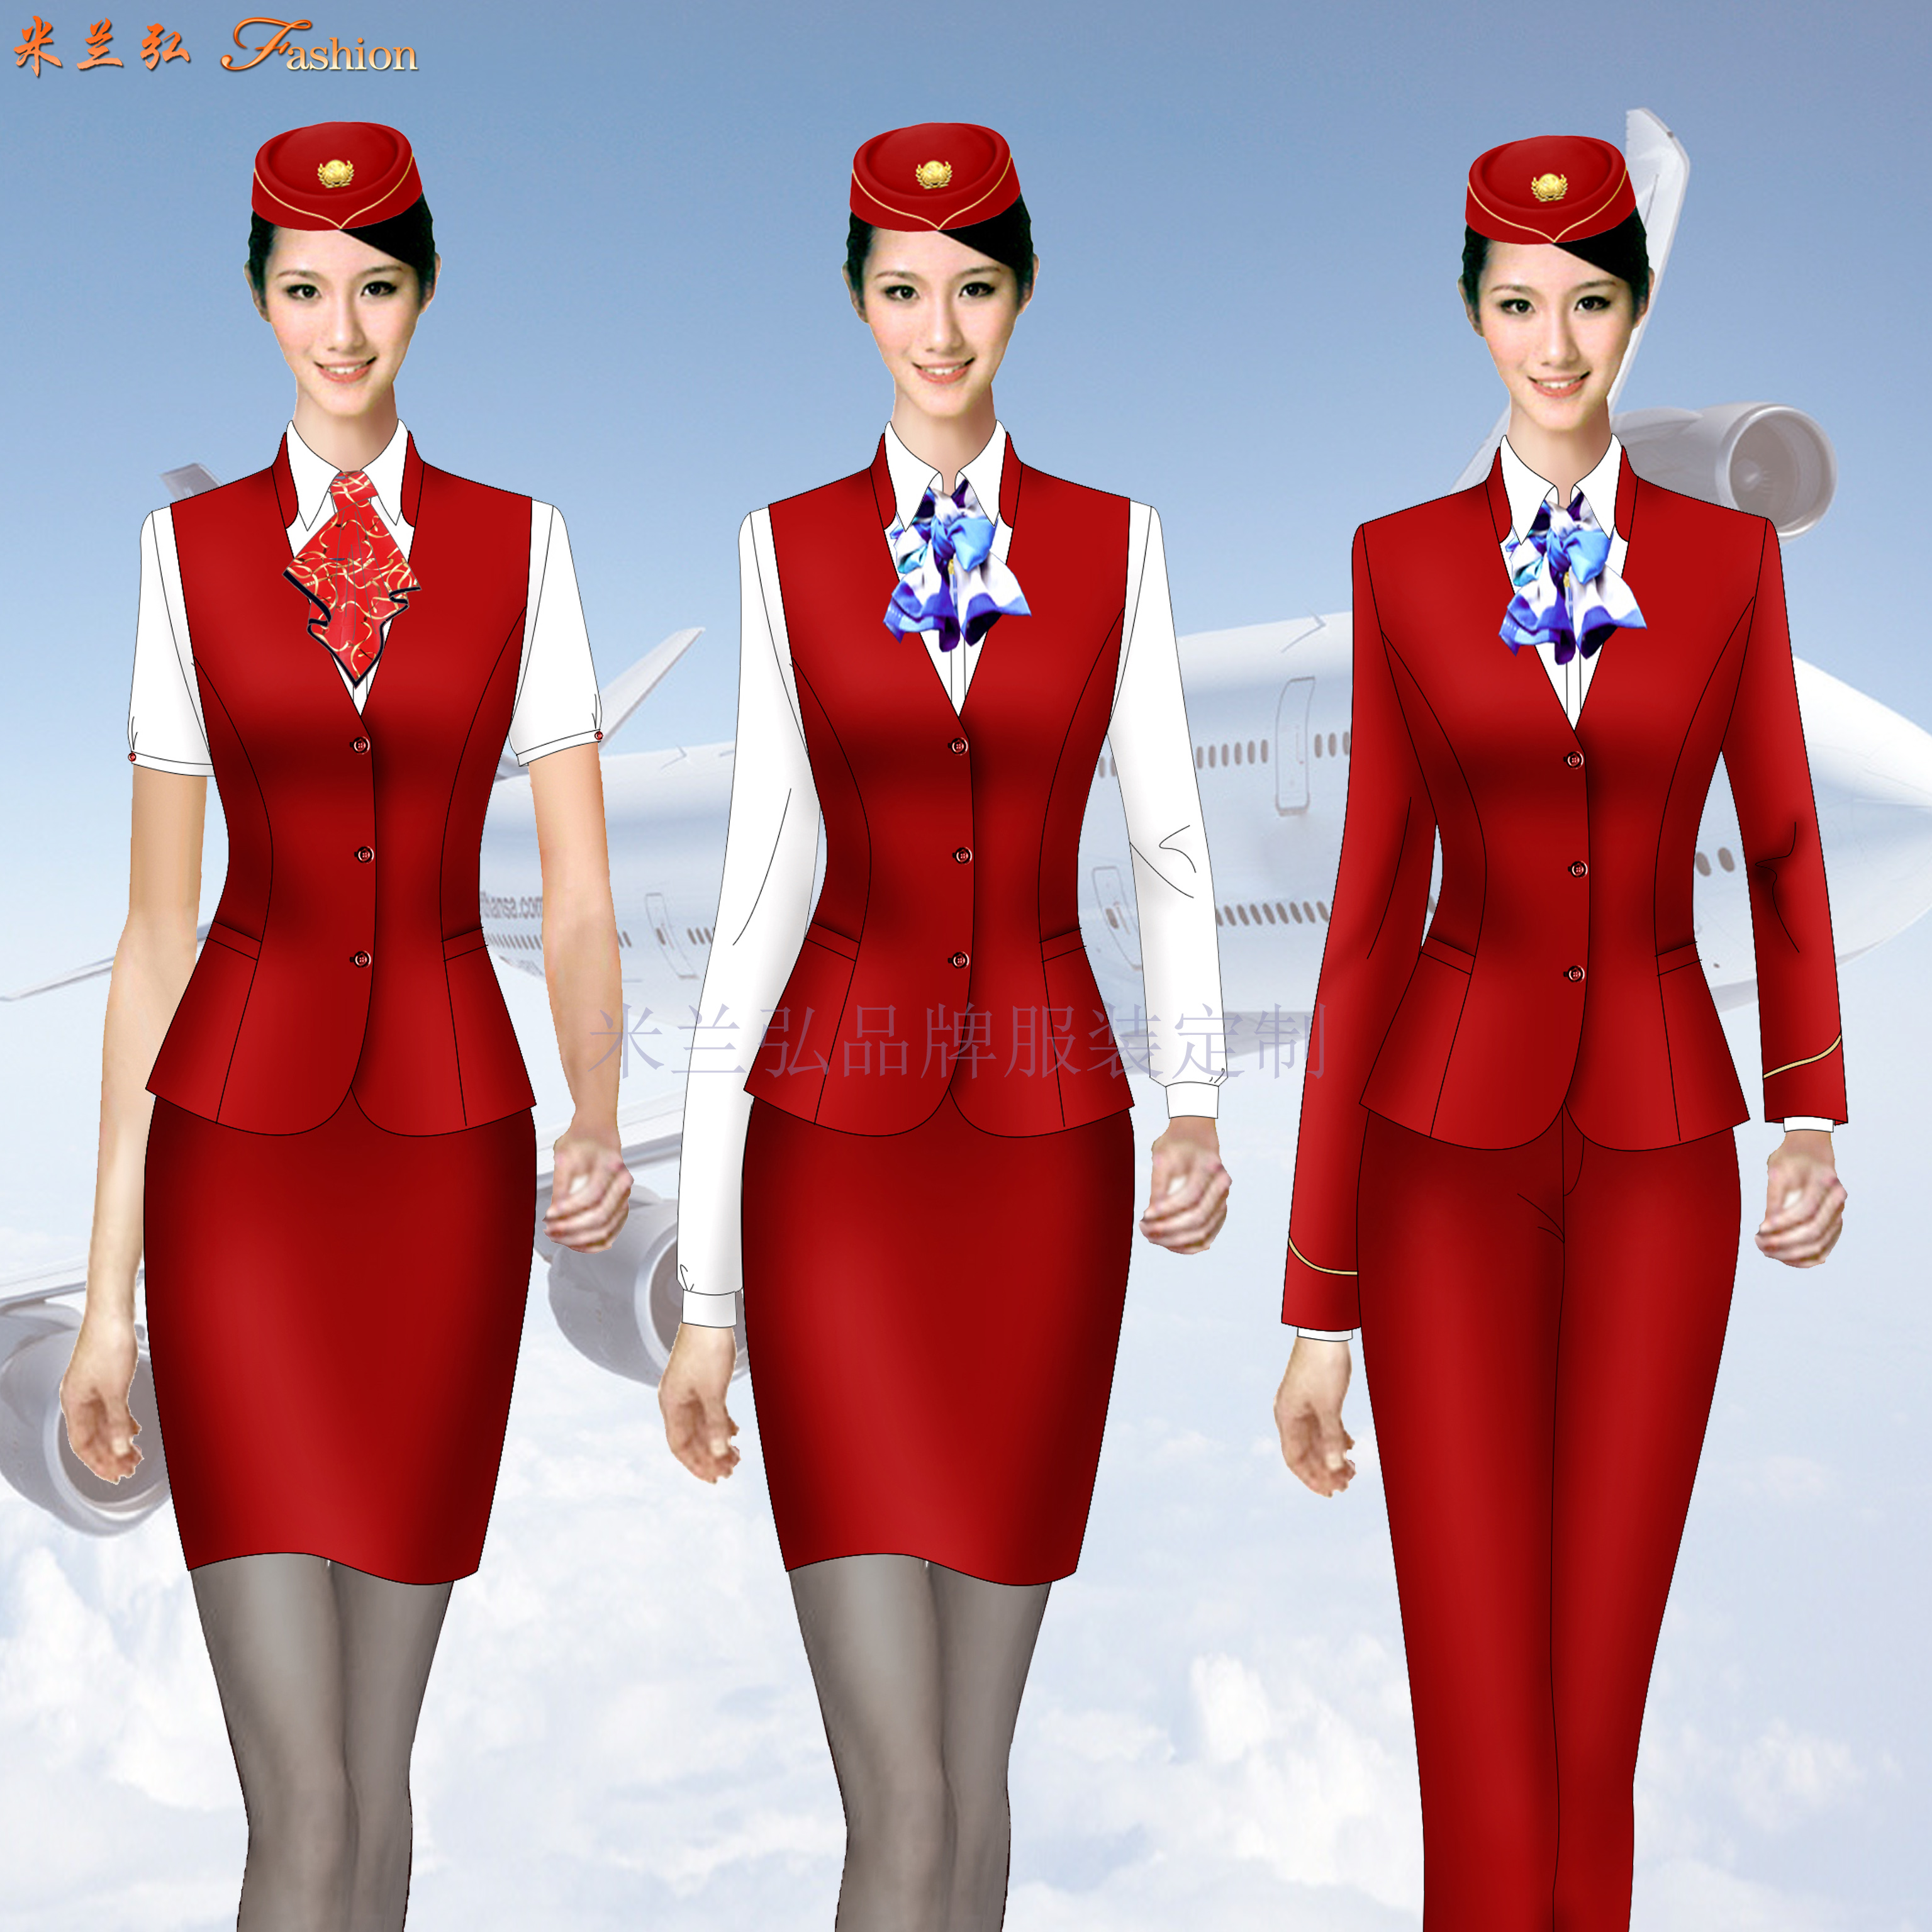 空乘职业装-定做空姐职业装女装套装-米兰弘服装-2